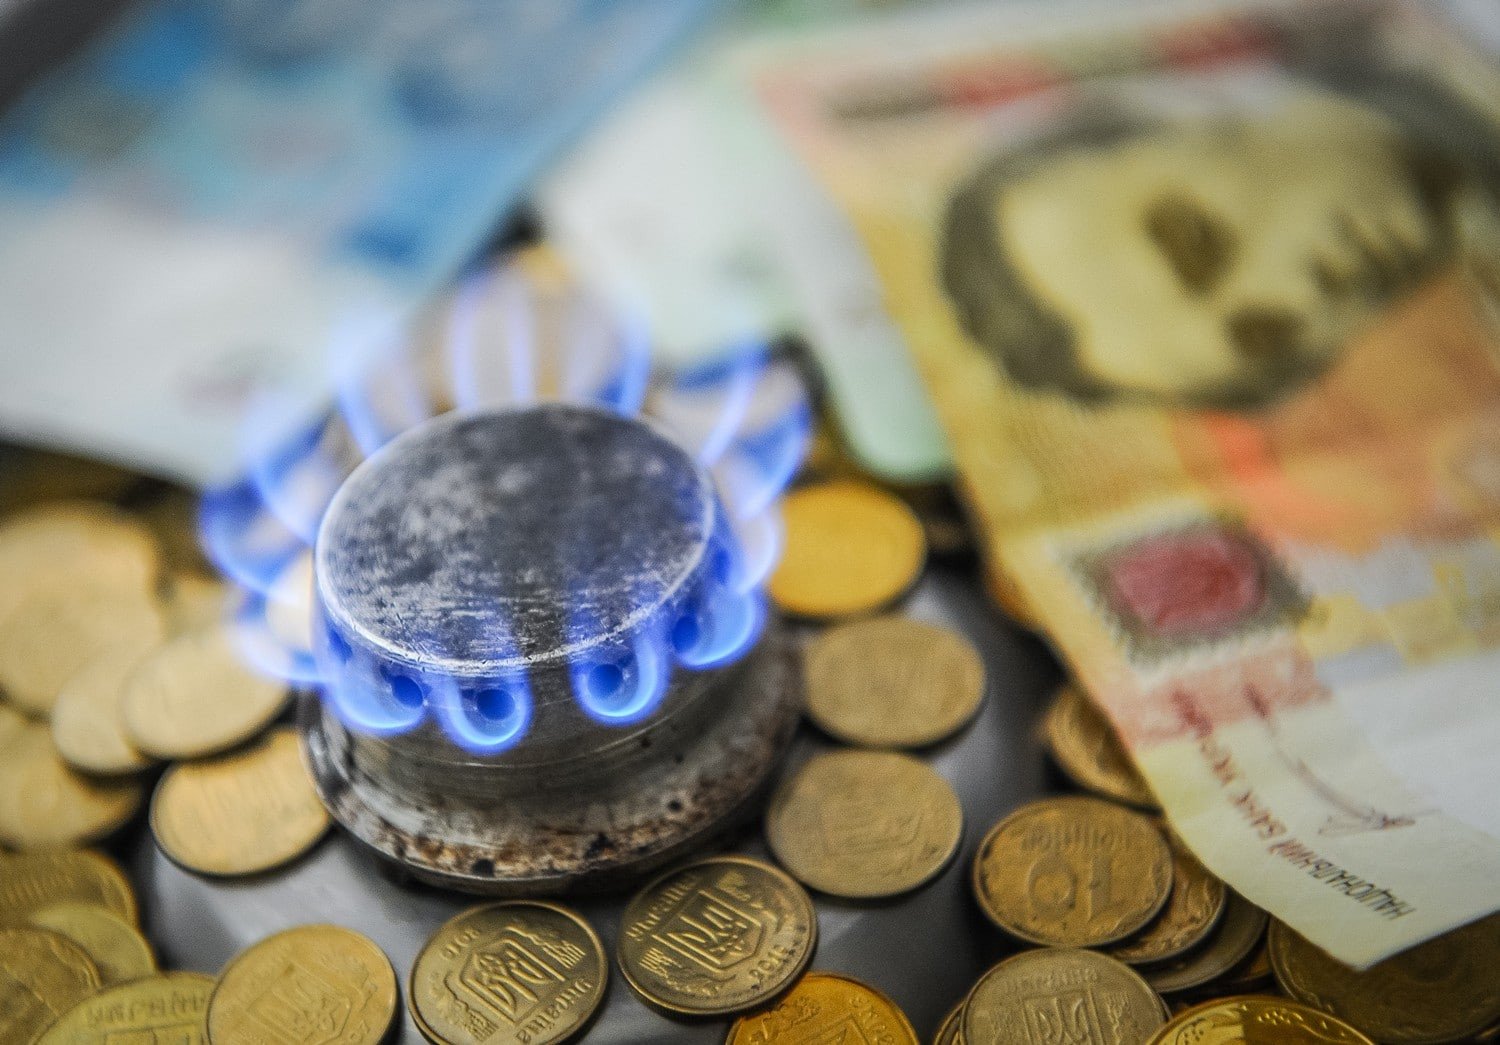 Снижение до 5 гривен или новый рост: по какой цене украинцам будут продавать газ с 1 апреля